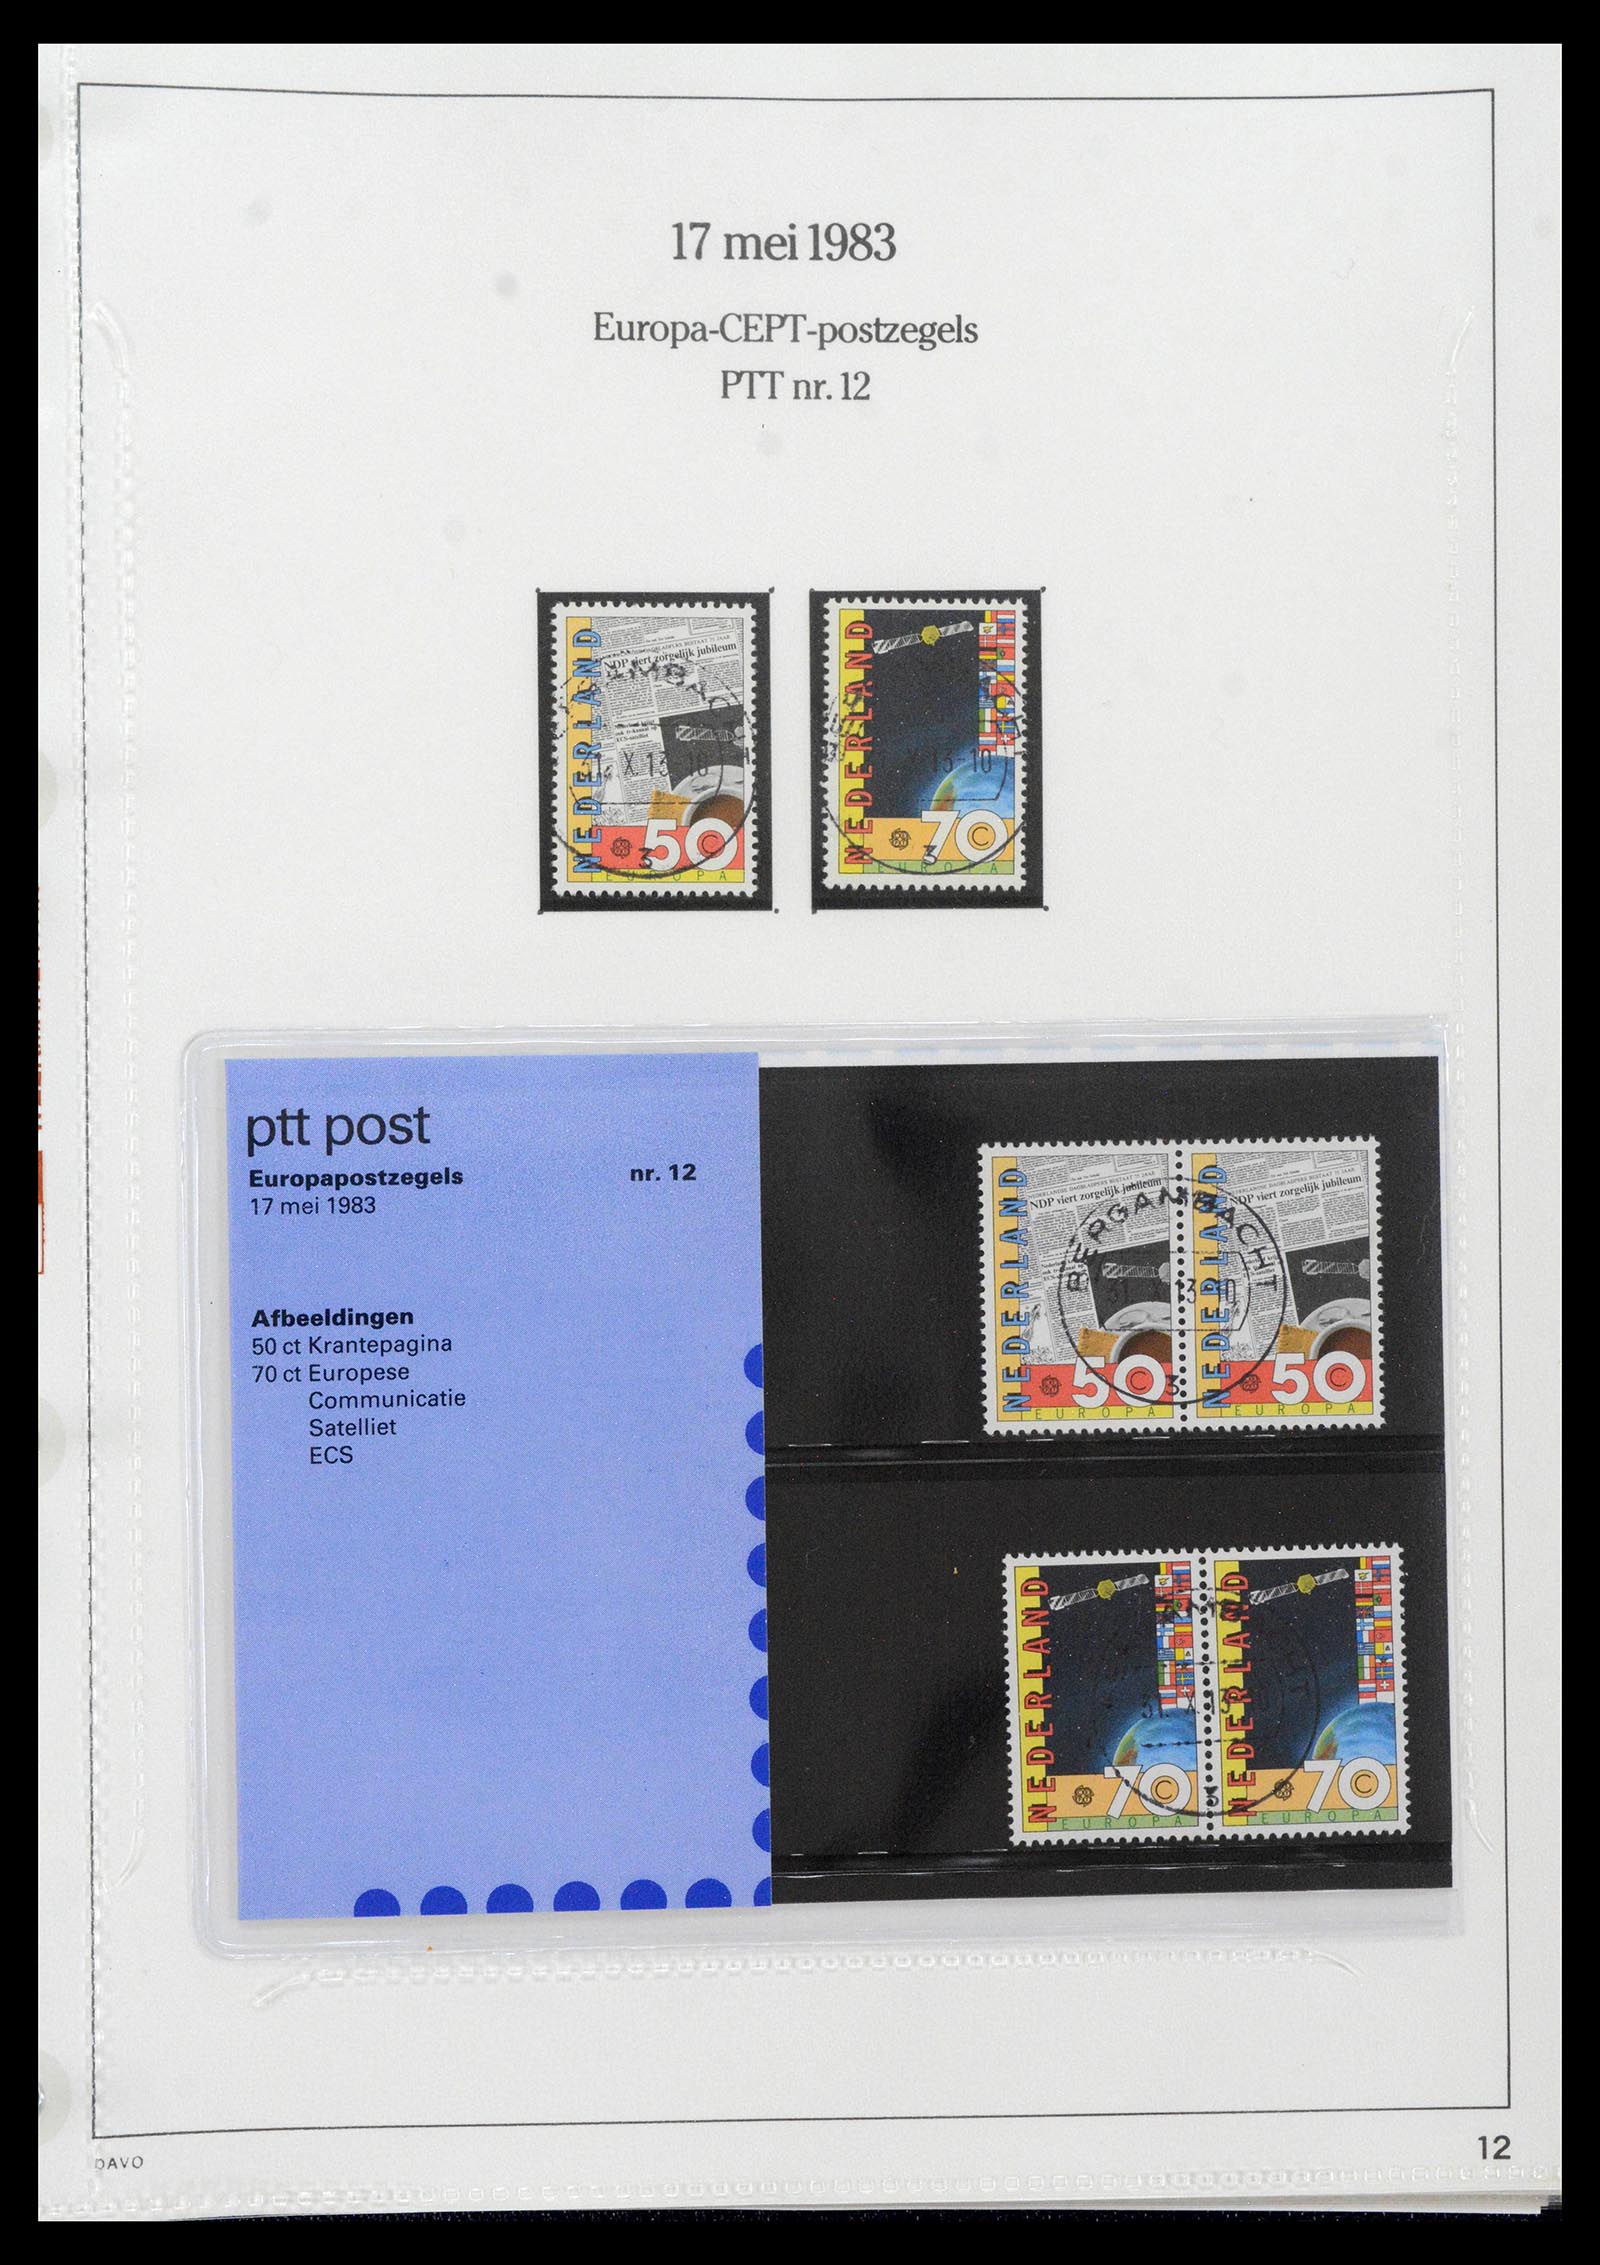 39121 0012 - Stamp collection 39121 Netherlands presentationpacks 1982-2001.